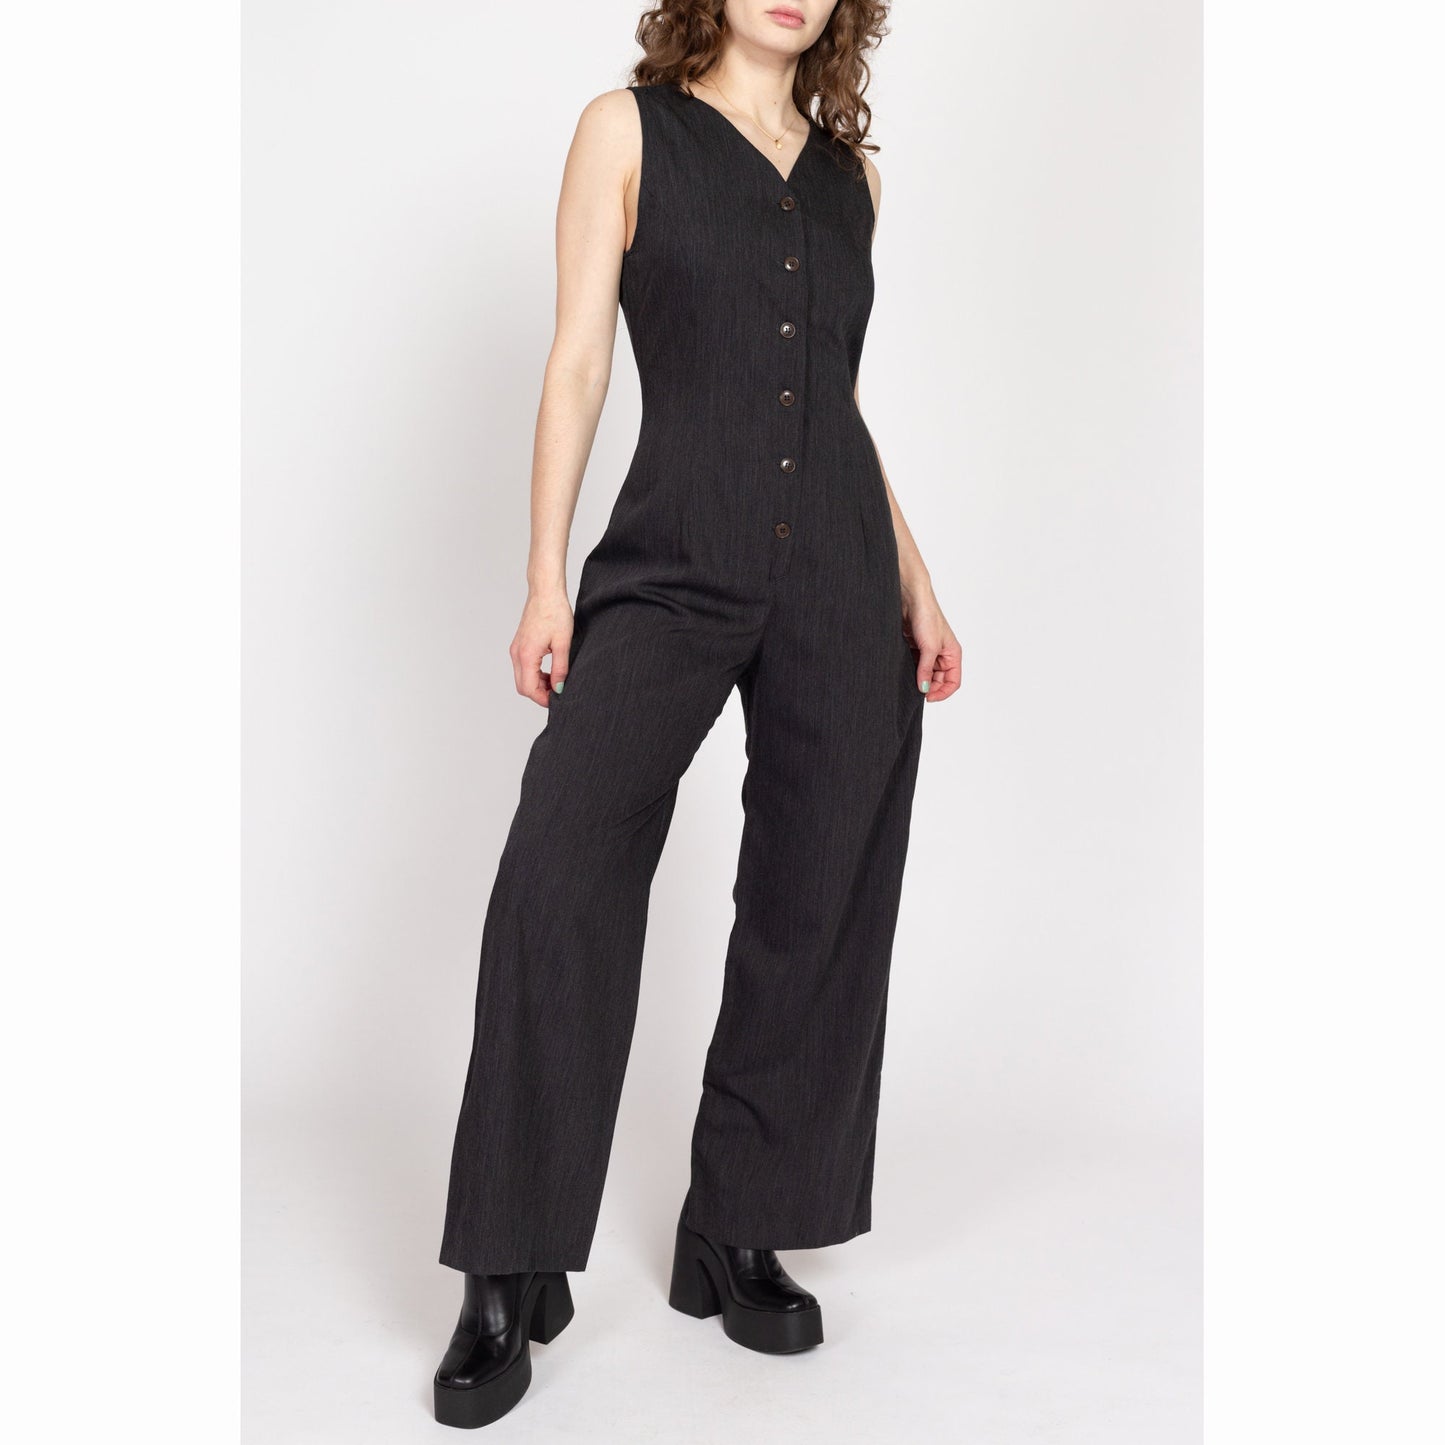 Medium 90s Minimalist Dark Grey Straight Leg Jumpsuit | Vintage Sleeveless Button Front Pantsuit